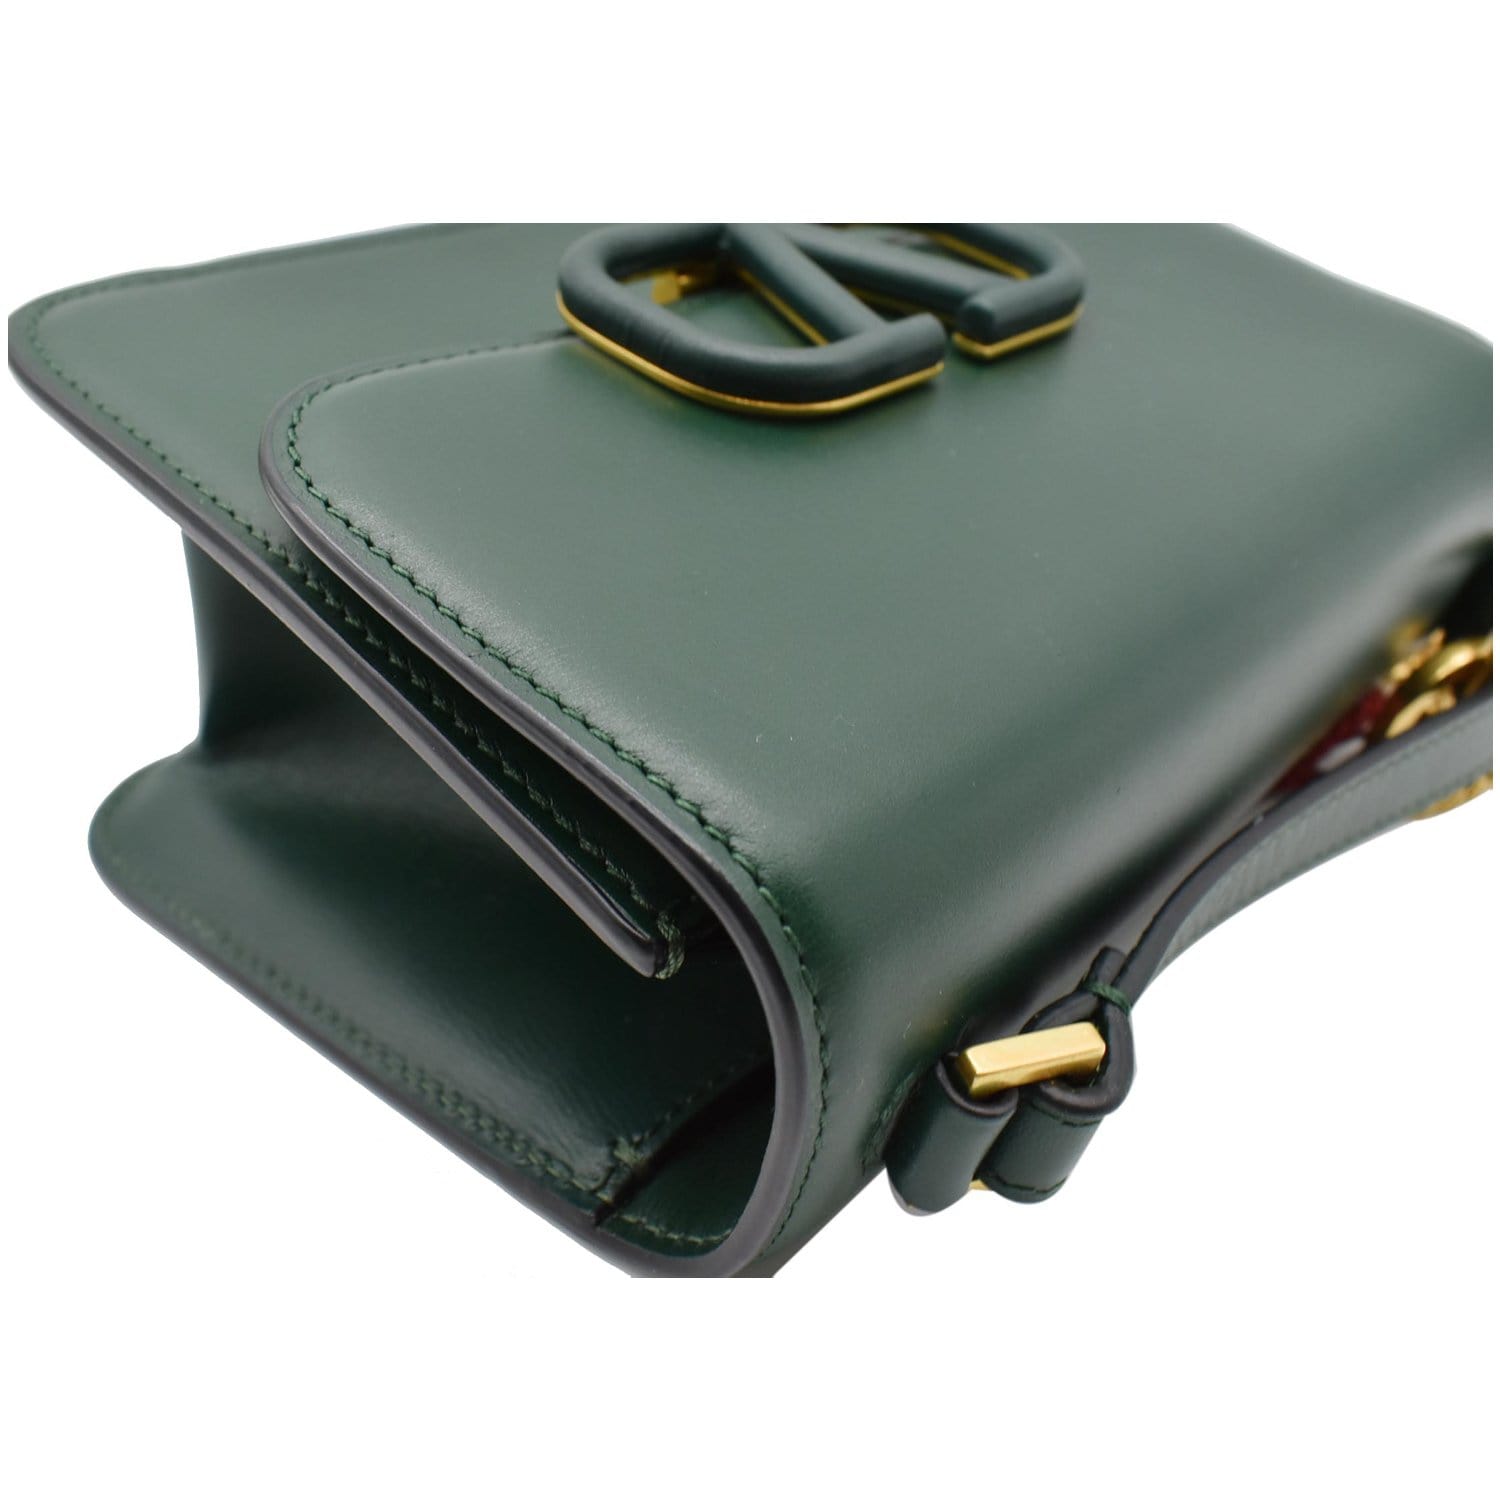 2019 Valentino VSLING Shoulder Bag in Green Leather [0007C